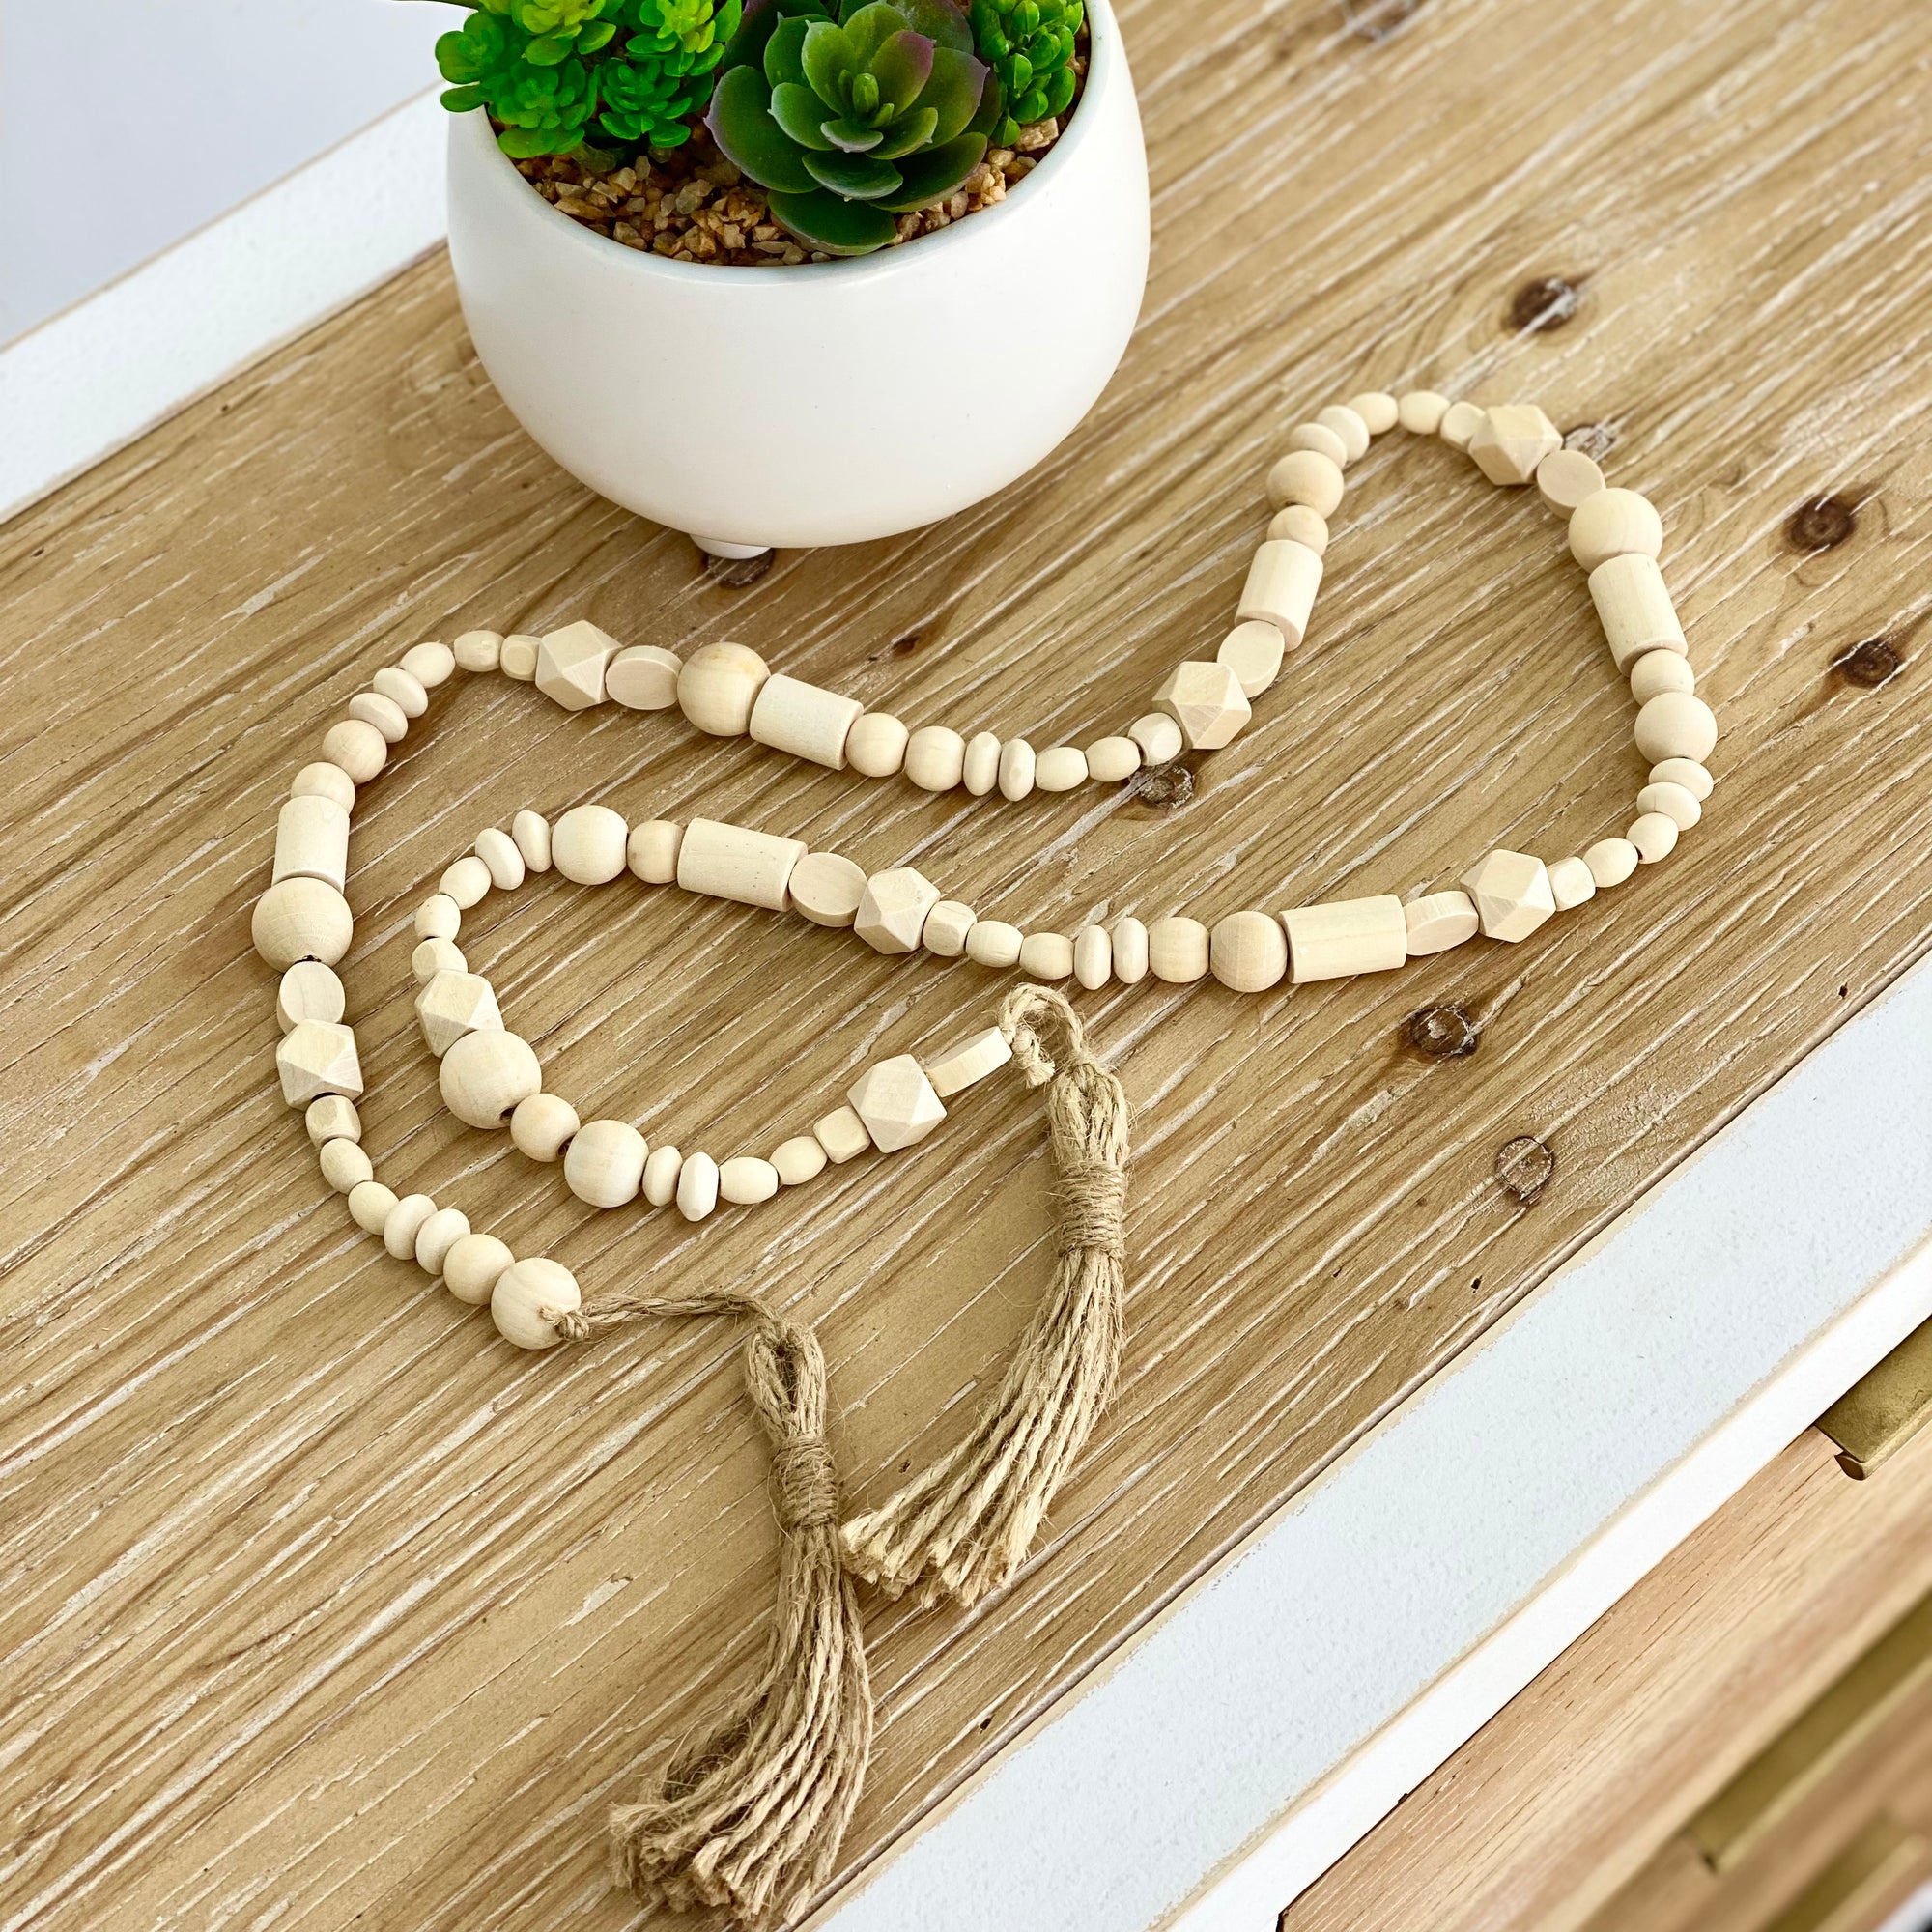 Wooden Geo Beads Garland With Tassels